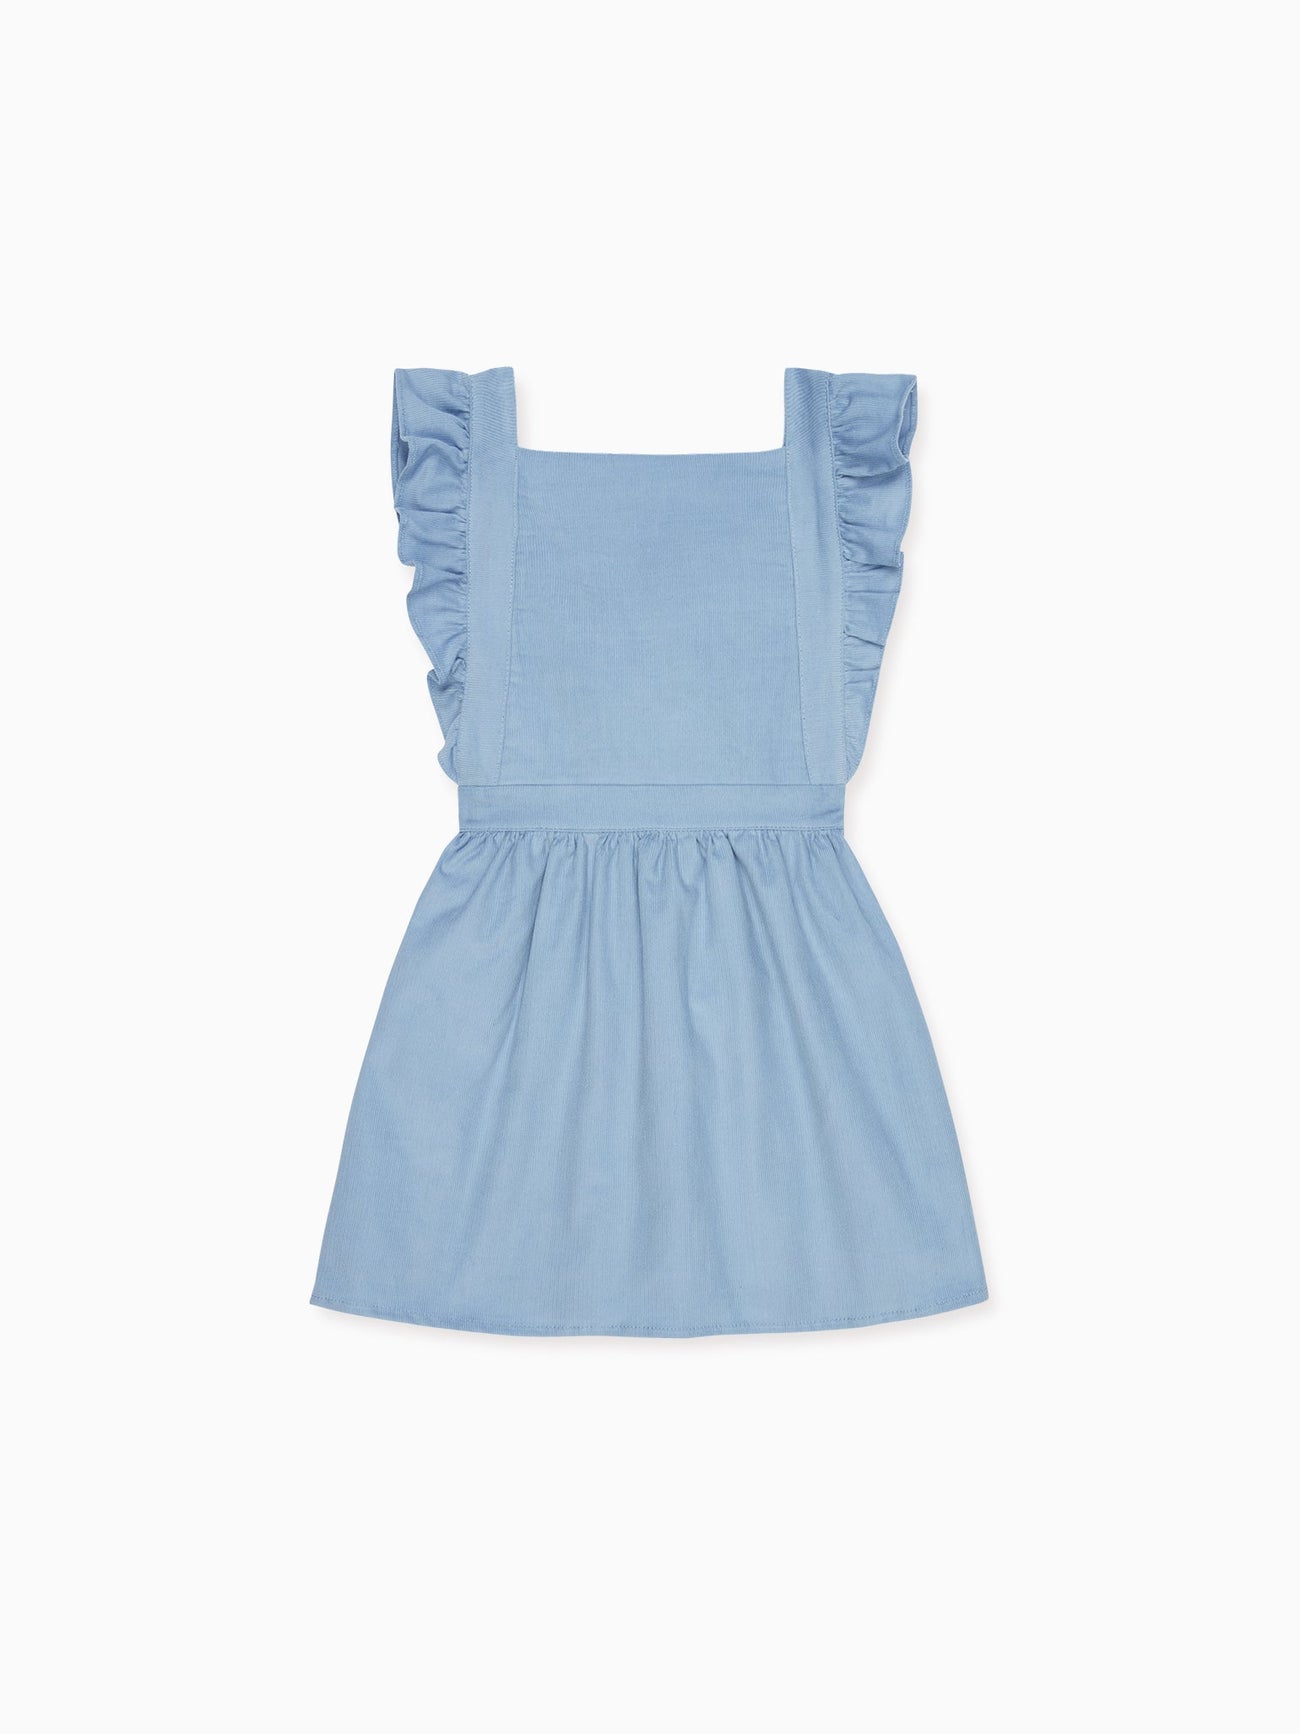 Dusty Blue Cora Girl Skirt